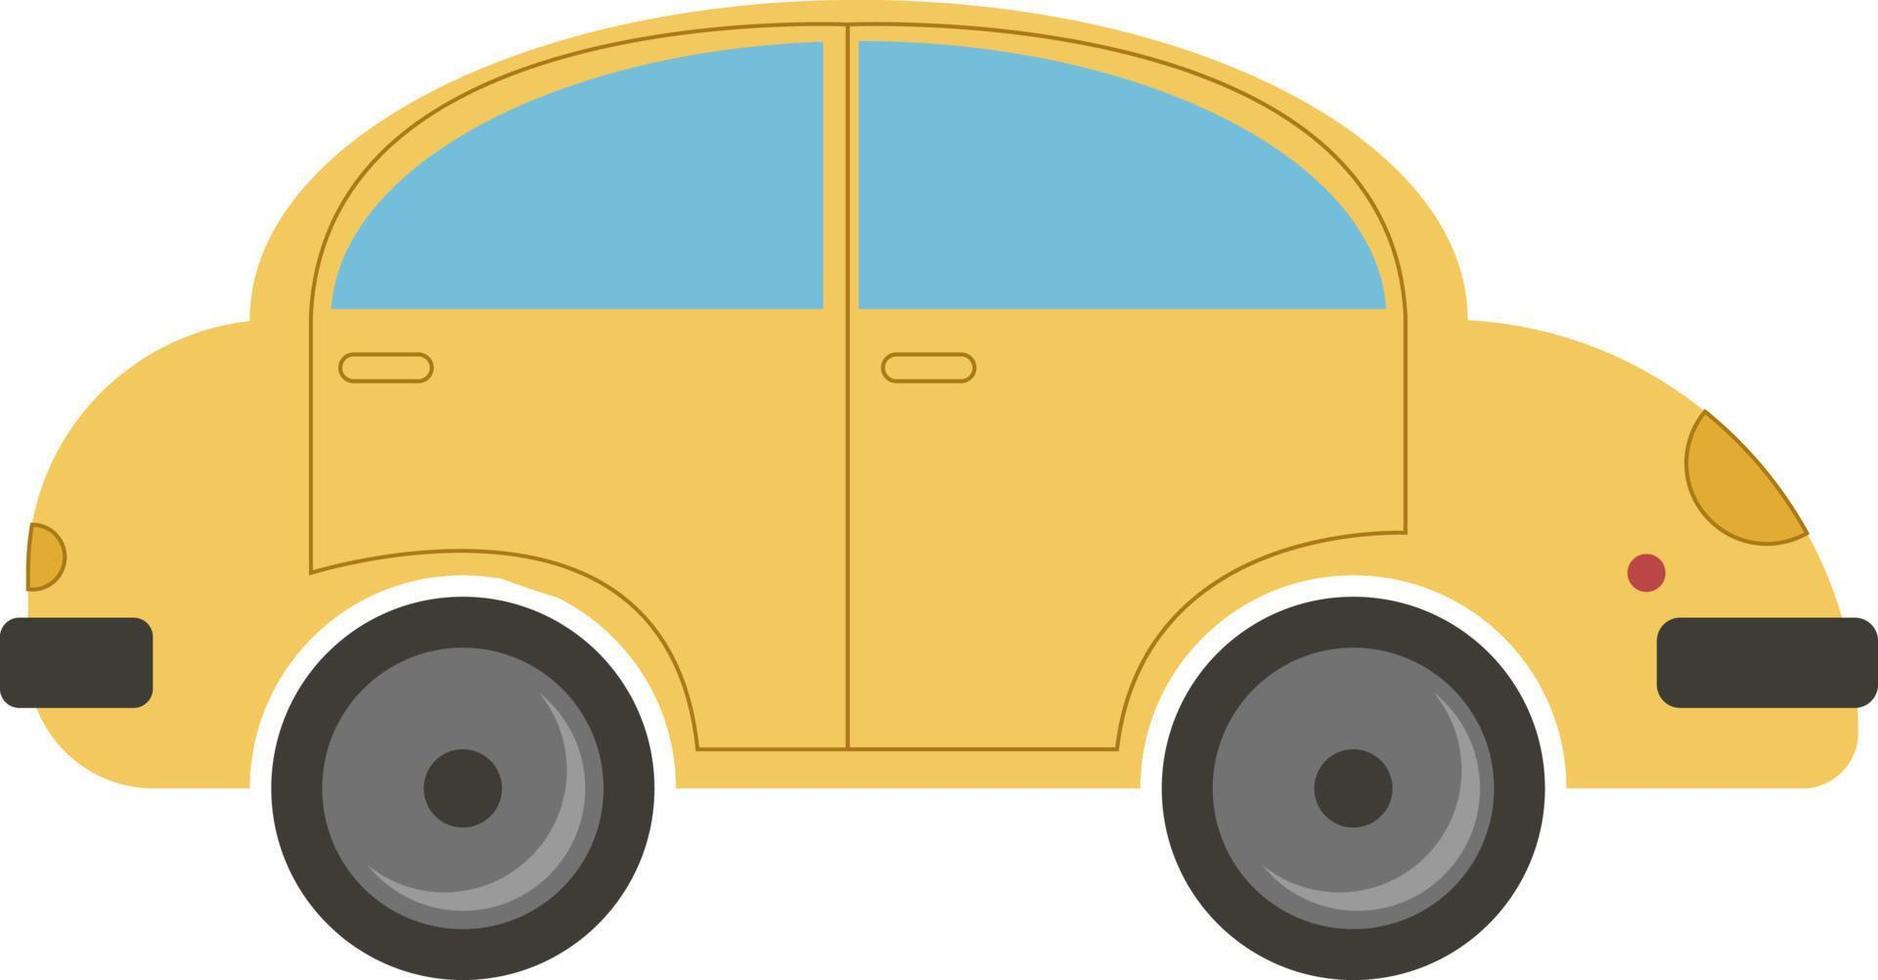 voiture jaune, illustration, vecteur sur fond blanc.